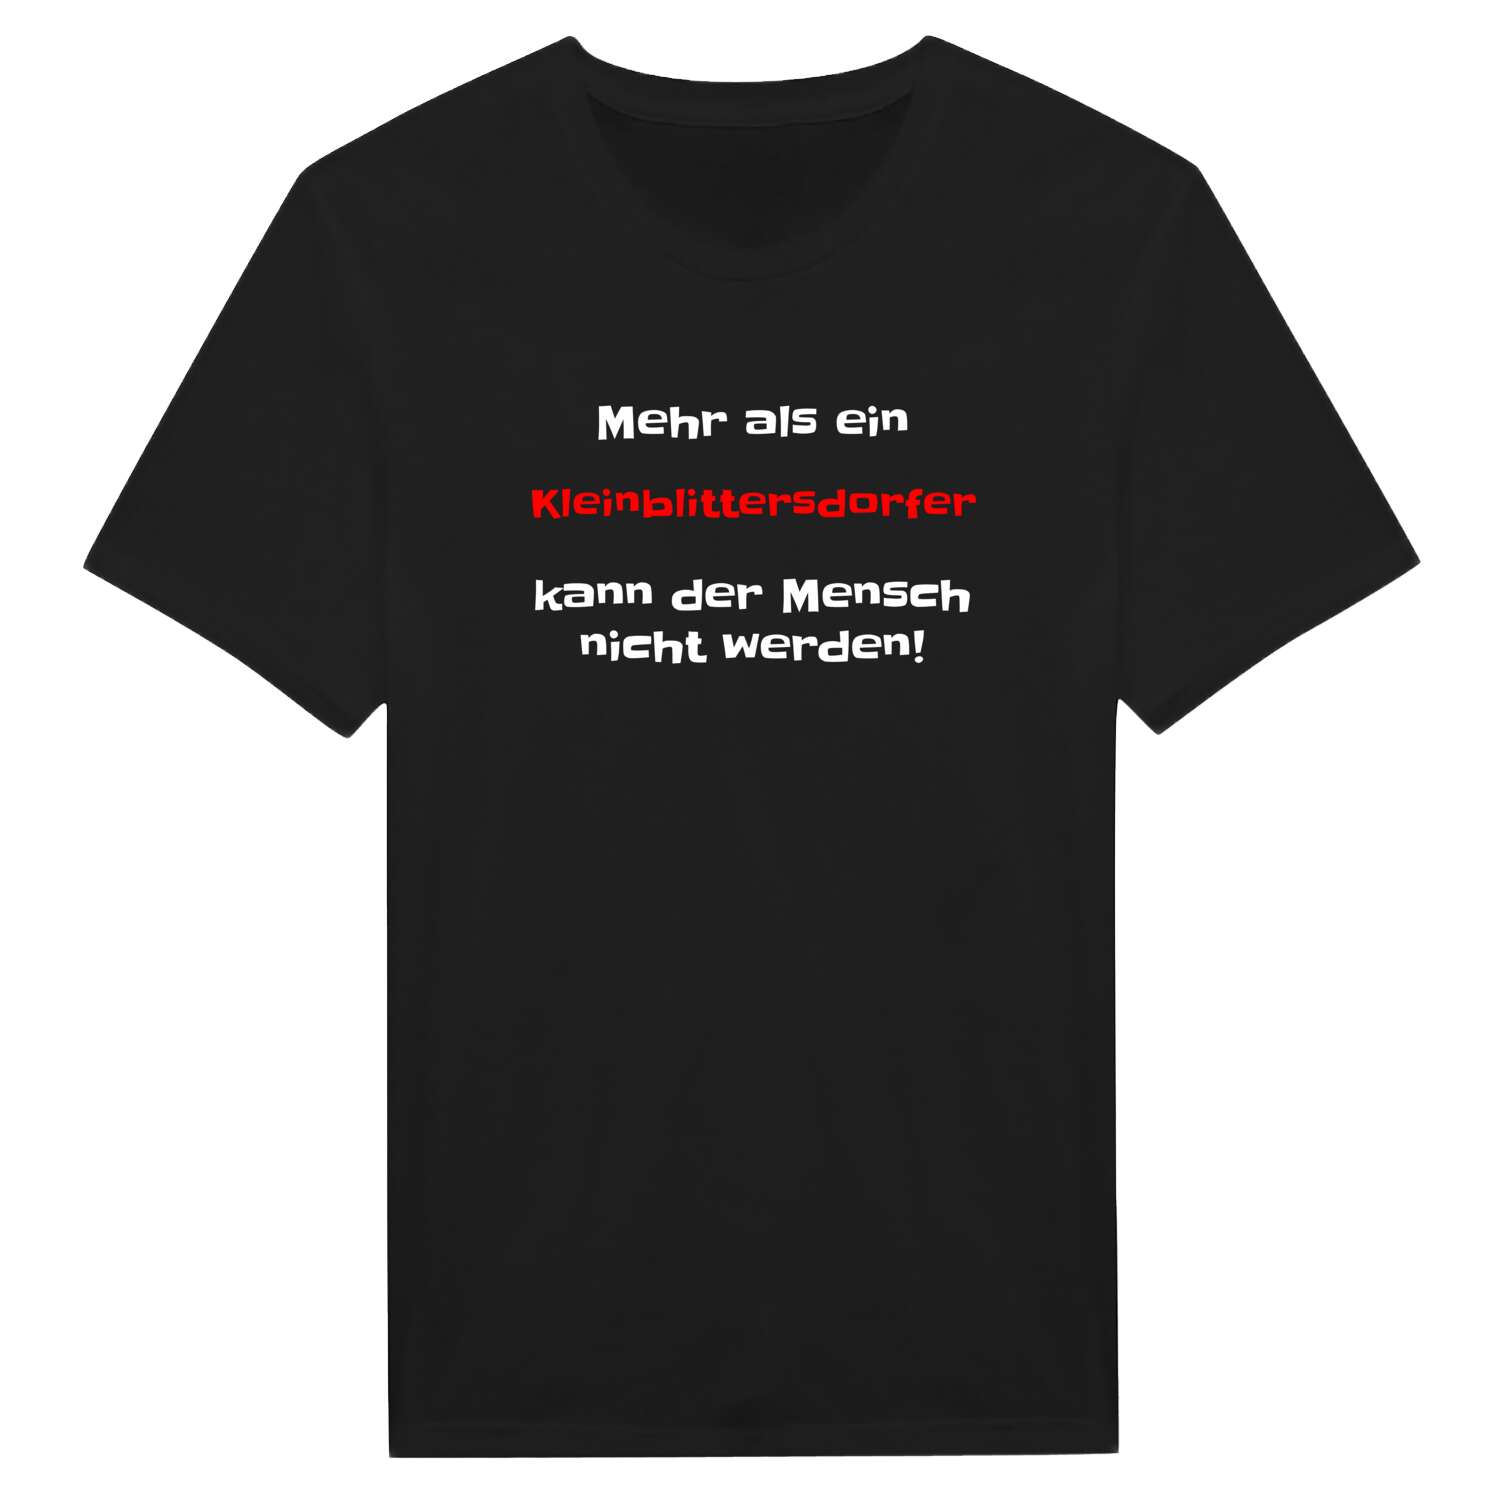 Kleinblittersdorf T-Shirt »Mehr als ein«